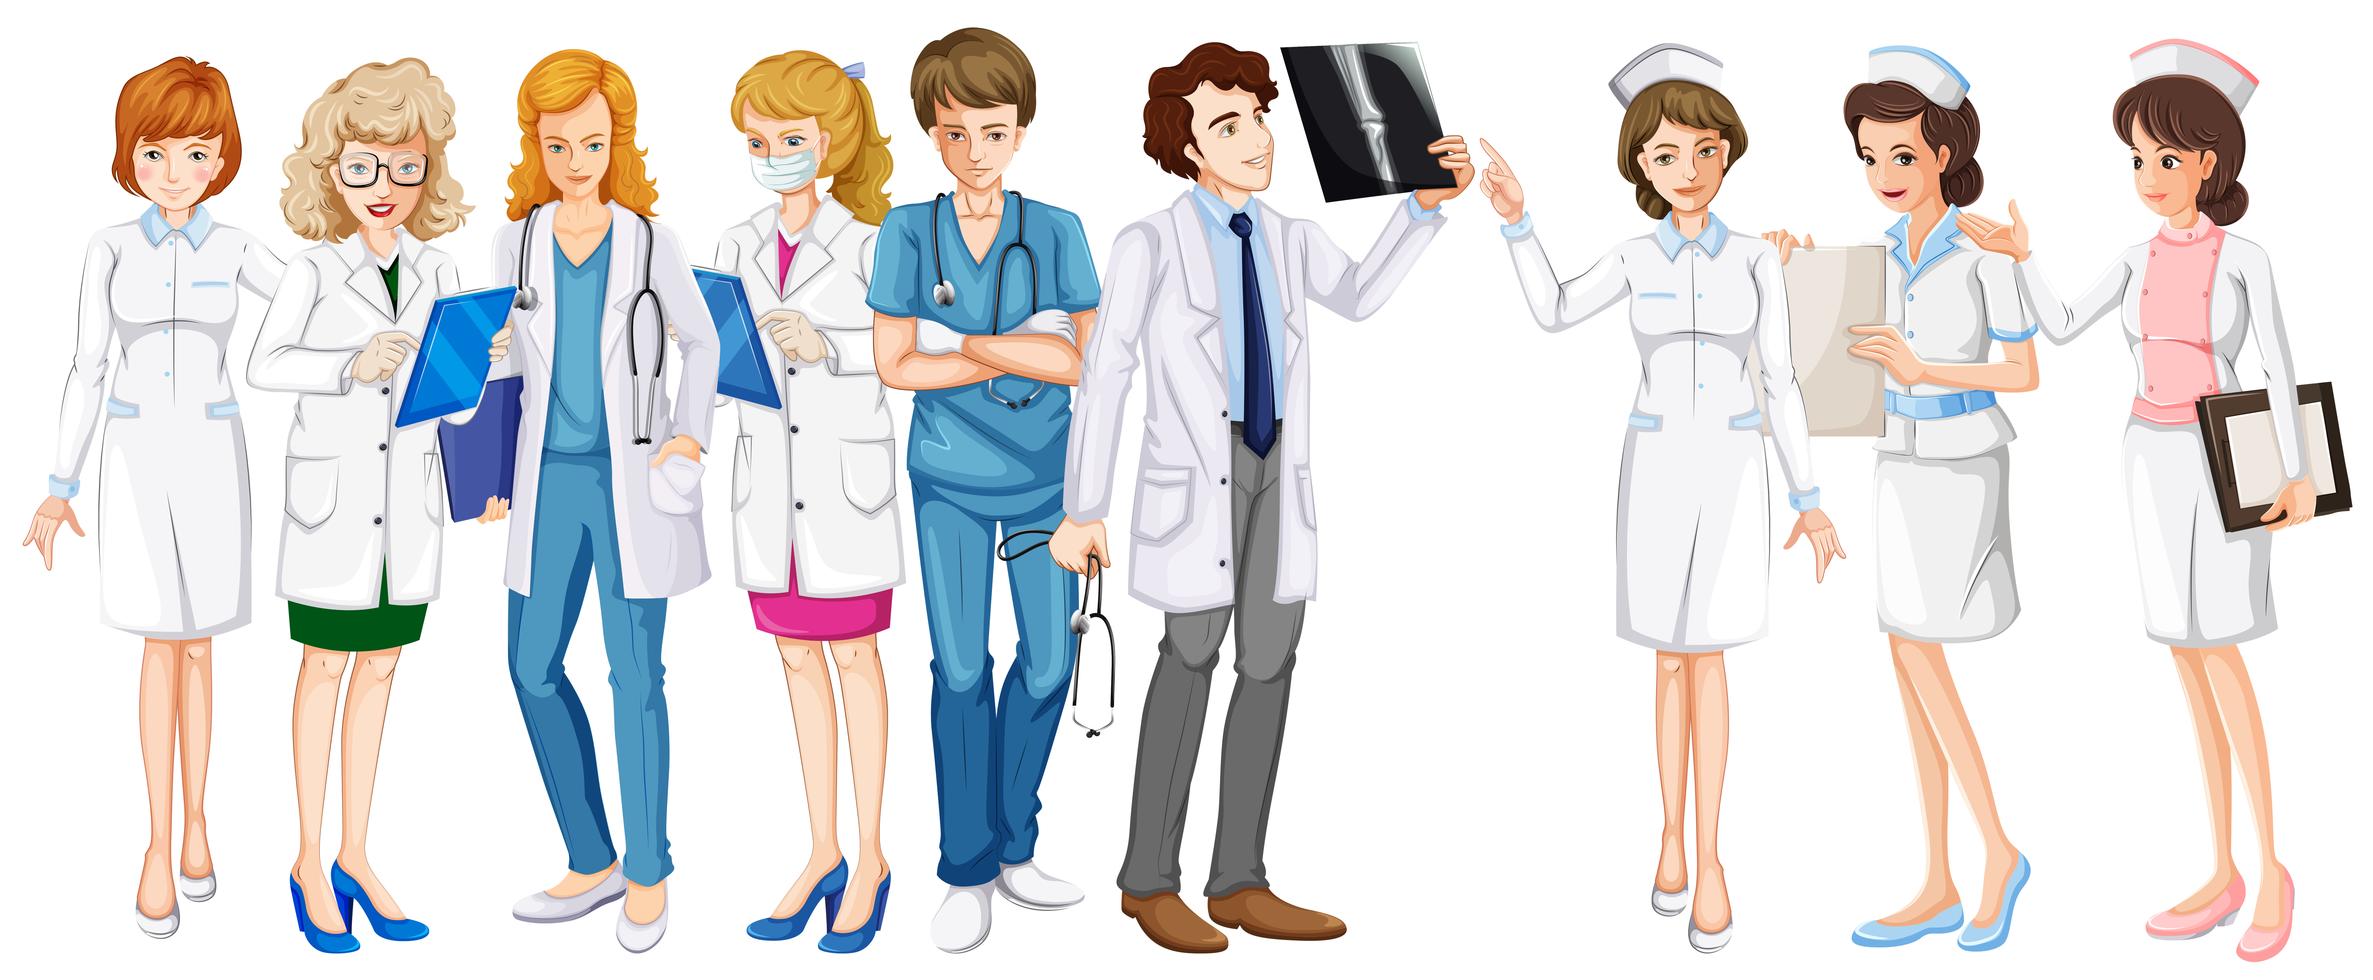 Картинок с различными профессиями врачи